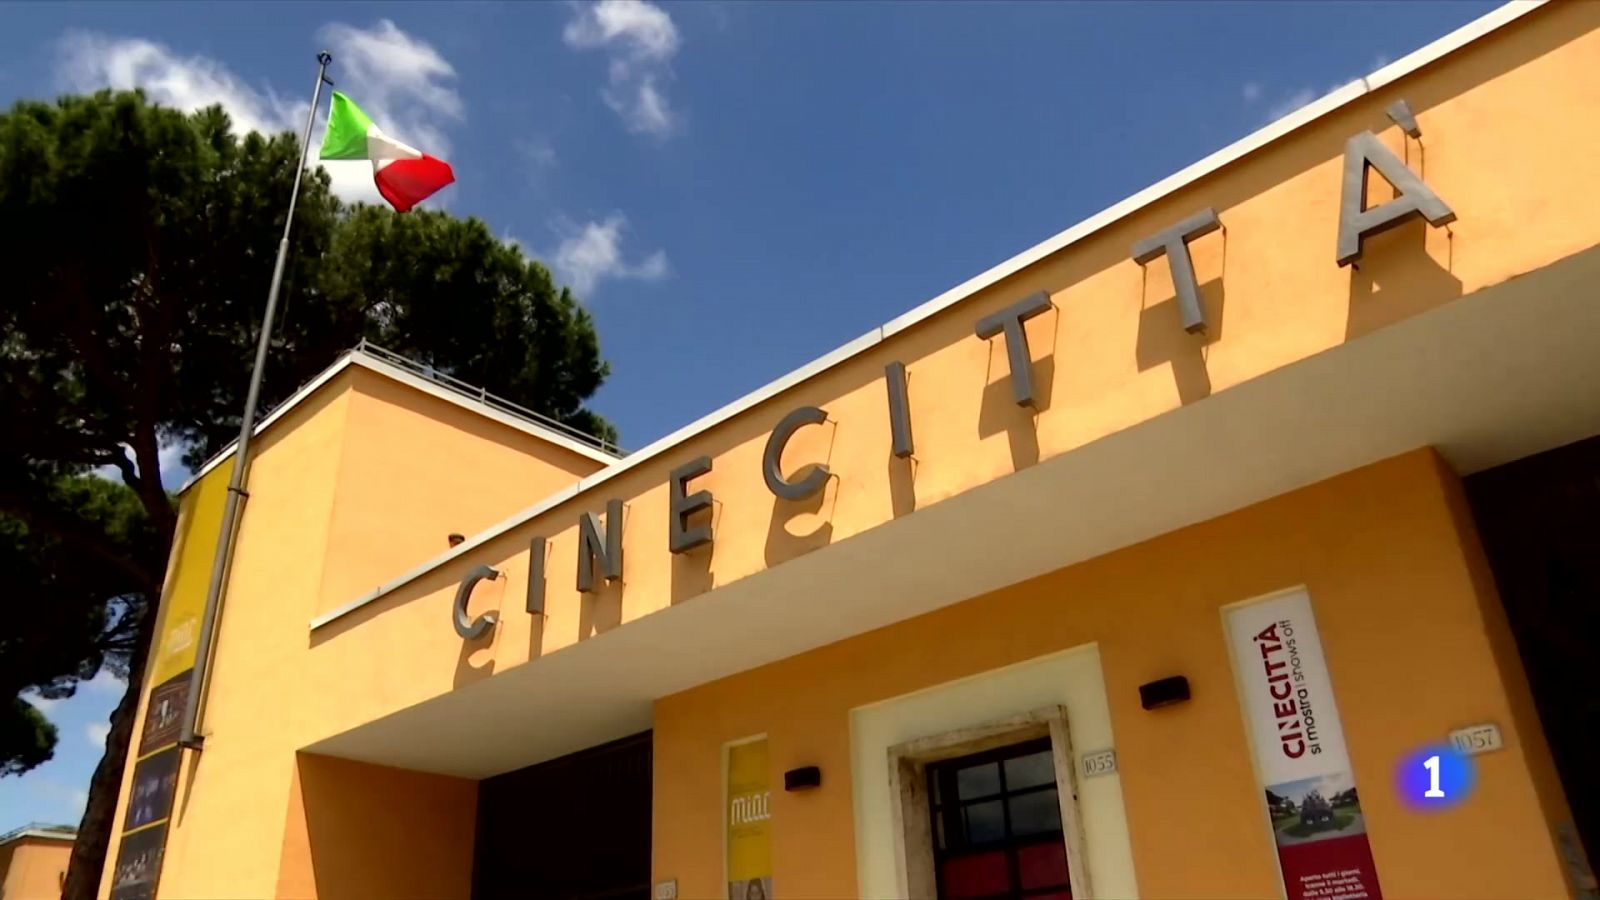 Vídeo: Los estudios Cinecitta reabren convertidos en un museo